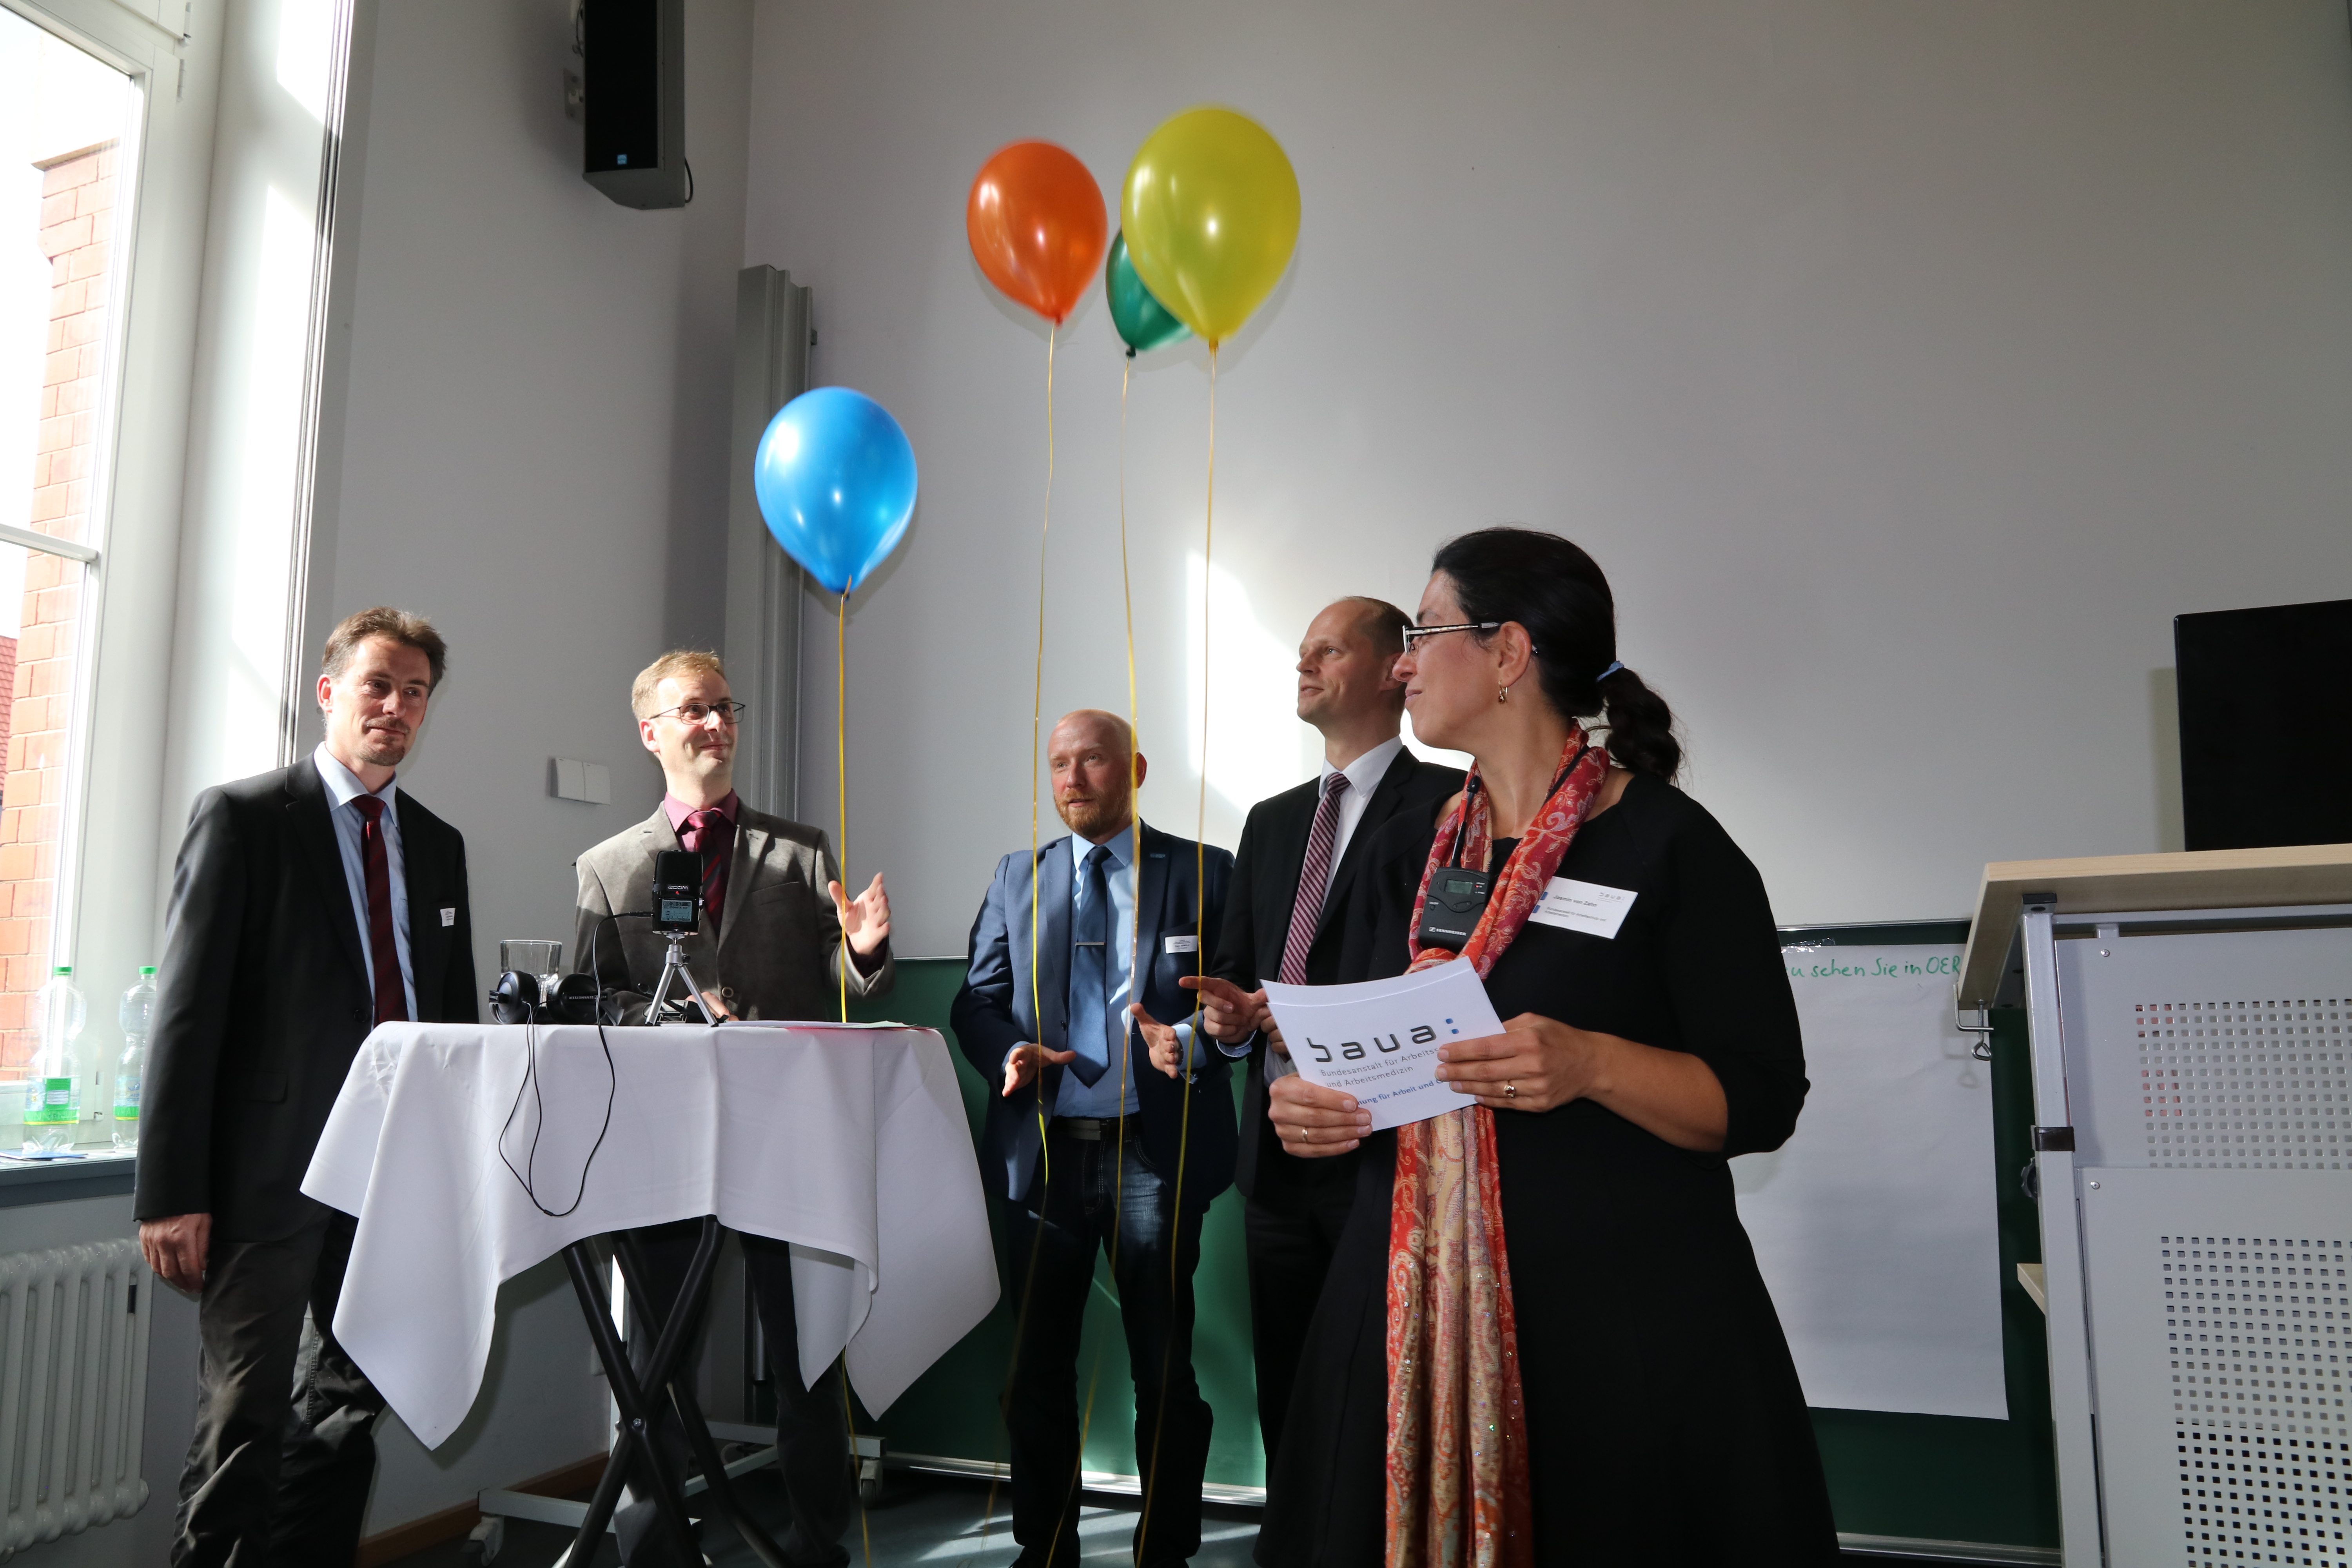 Podiumsdiskussion mit dem symbolischen freigeben und verbreiten von Bildungskonzepten in Form von Ballons 